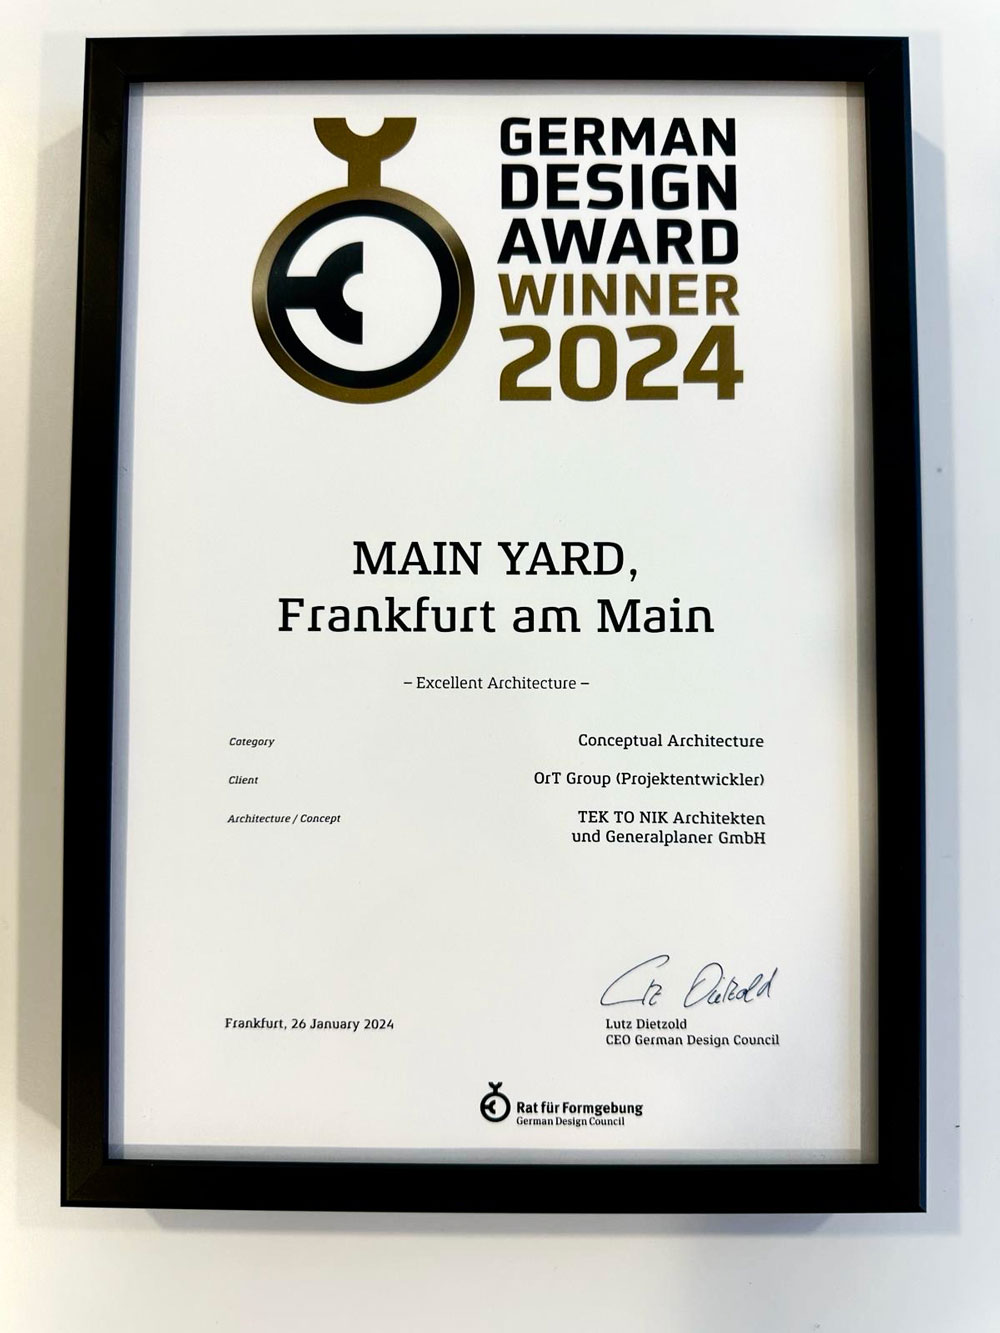 TEK TO NIK has won the German Design Award for 2024